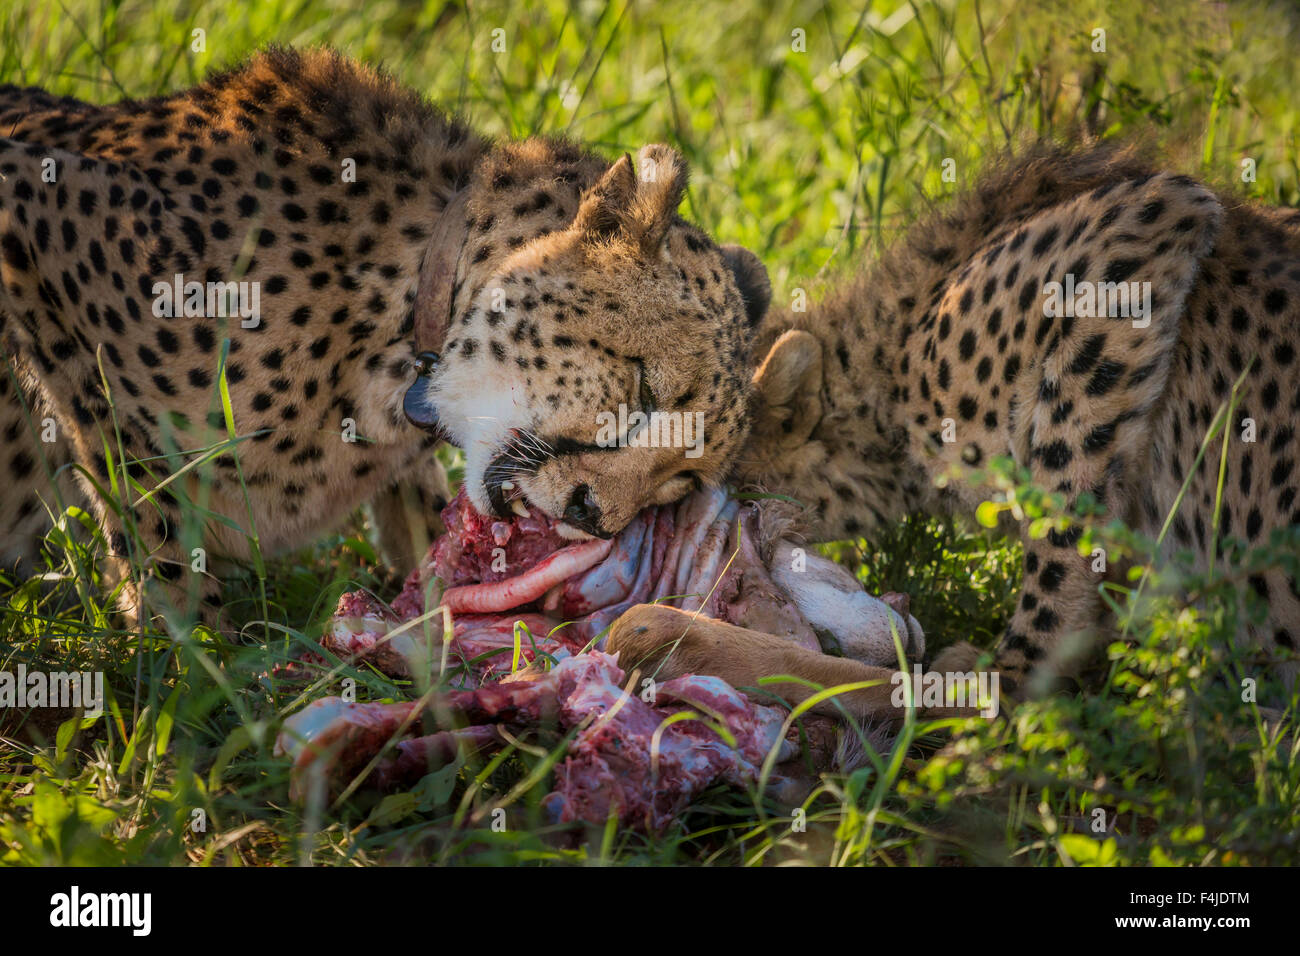 Los guepardos comiendo una gacela, el Parque Nacional de Etosha, Namibia, África Foto de stock